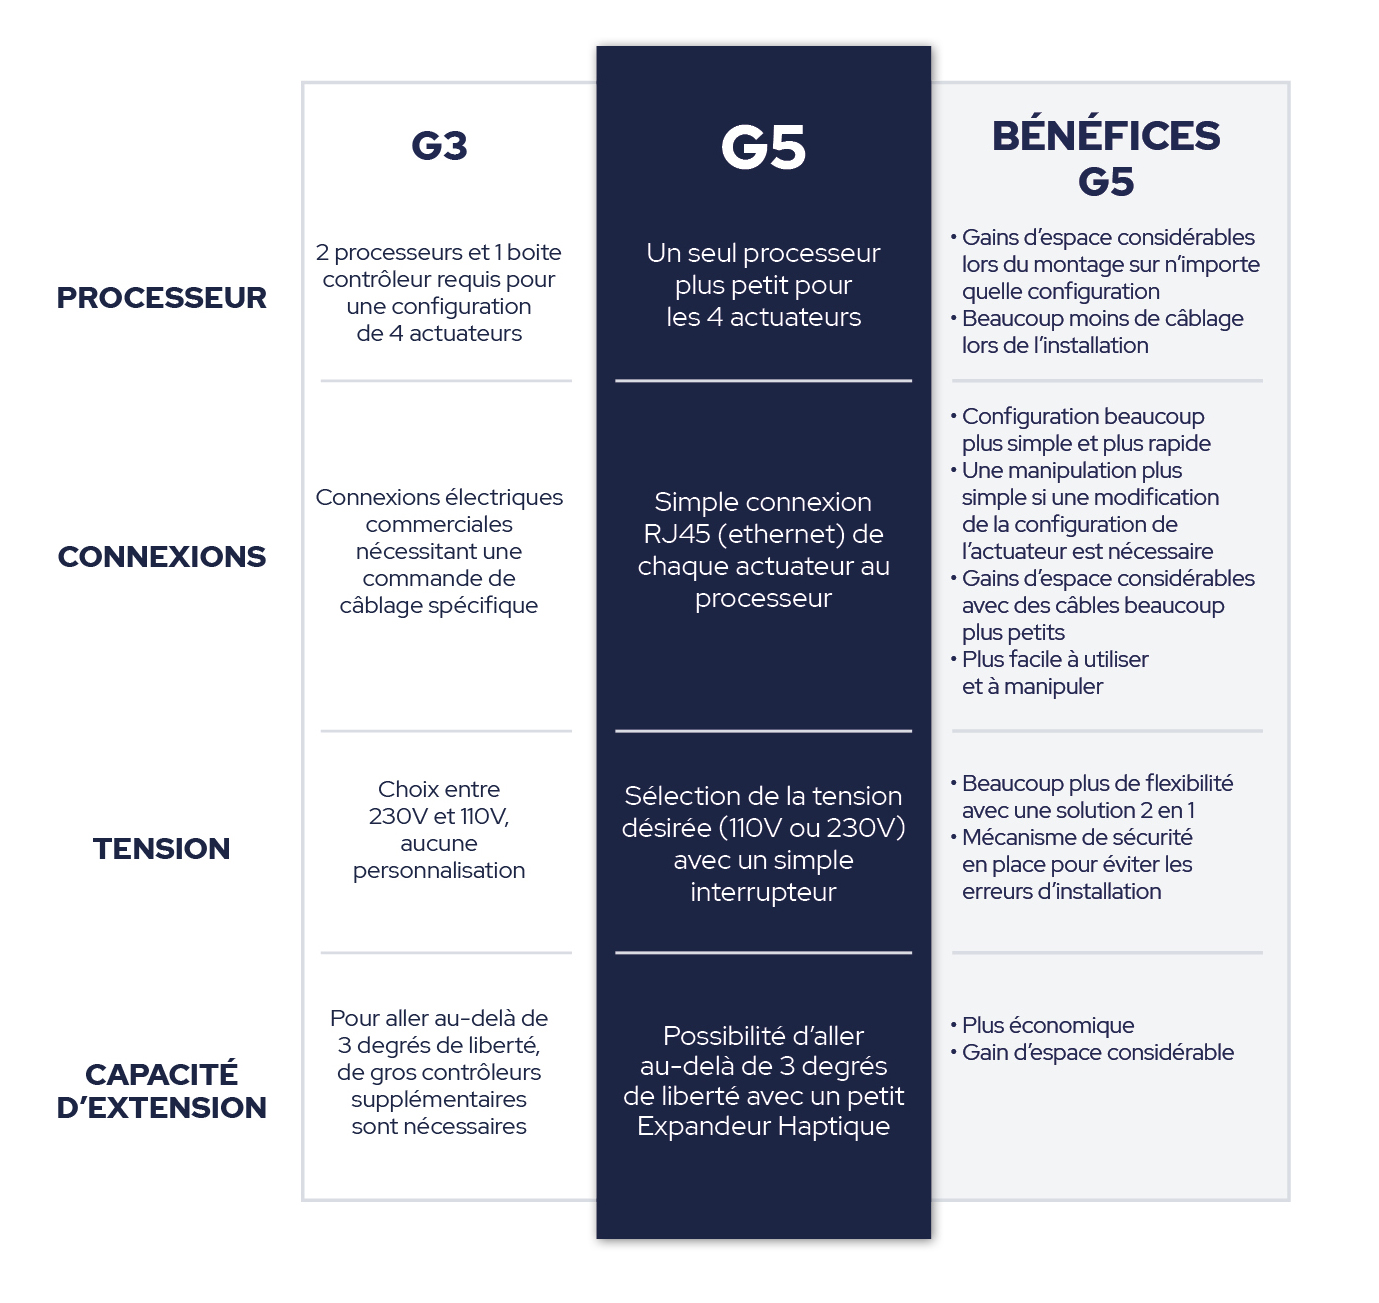 Table de comparaison entre G3 et G5